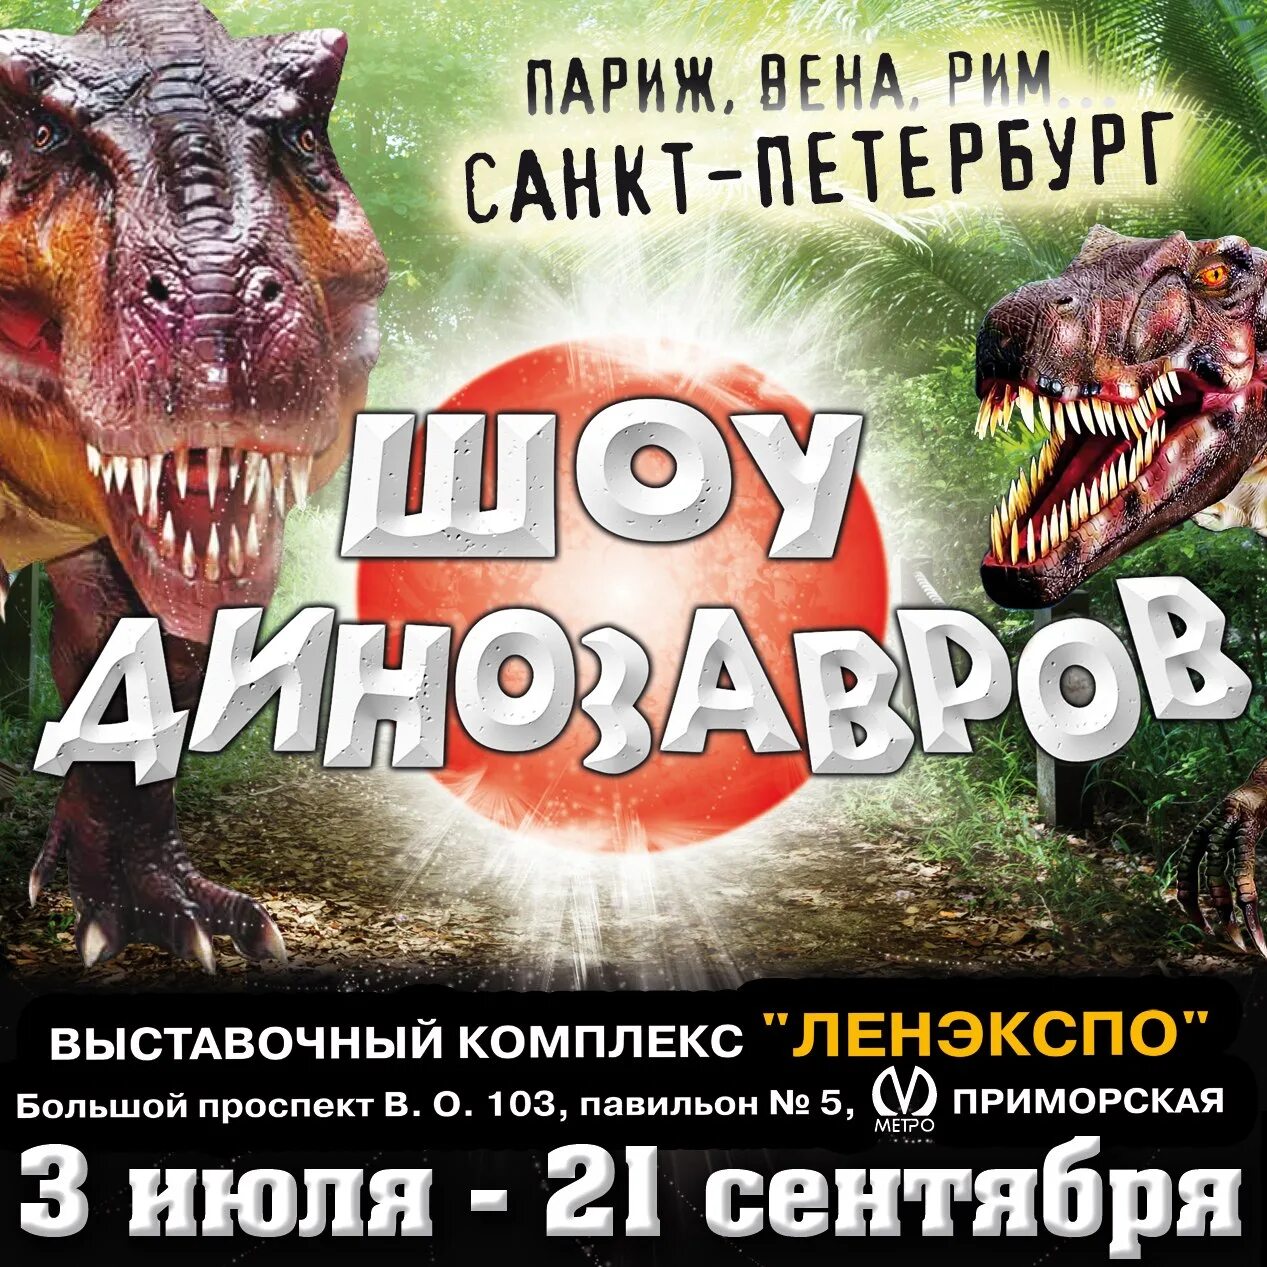 Динозавр шоу отзывы. Шоу динозавров Санкт-Петербург. Шоу динозавров Петербург. Выставка динозавров в Питере. Выставка динозавров табличка.